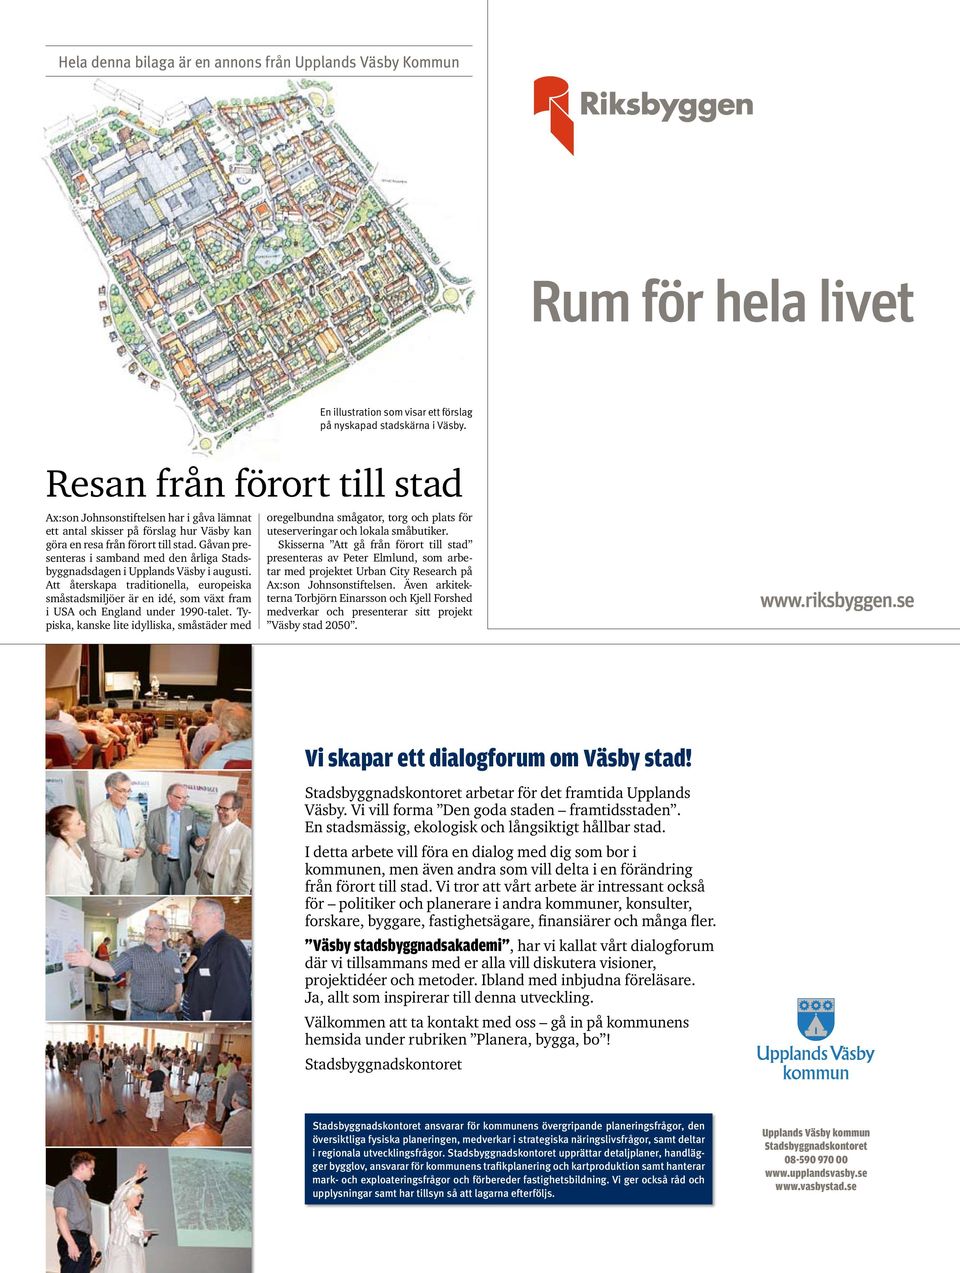 Gåvan presenteras i samband med den årliga Stadsbyggnadsdagen i Upplands Väsby i augusti.